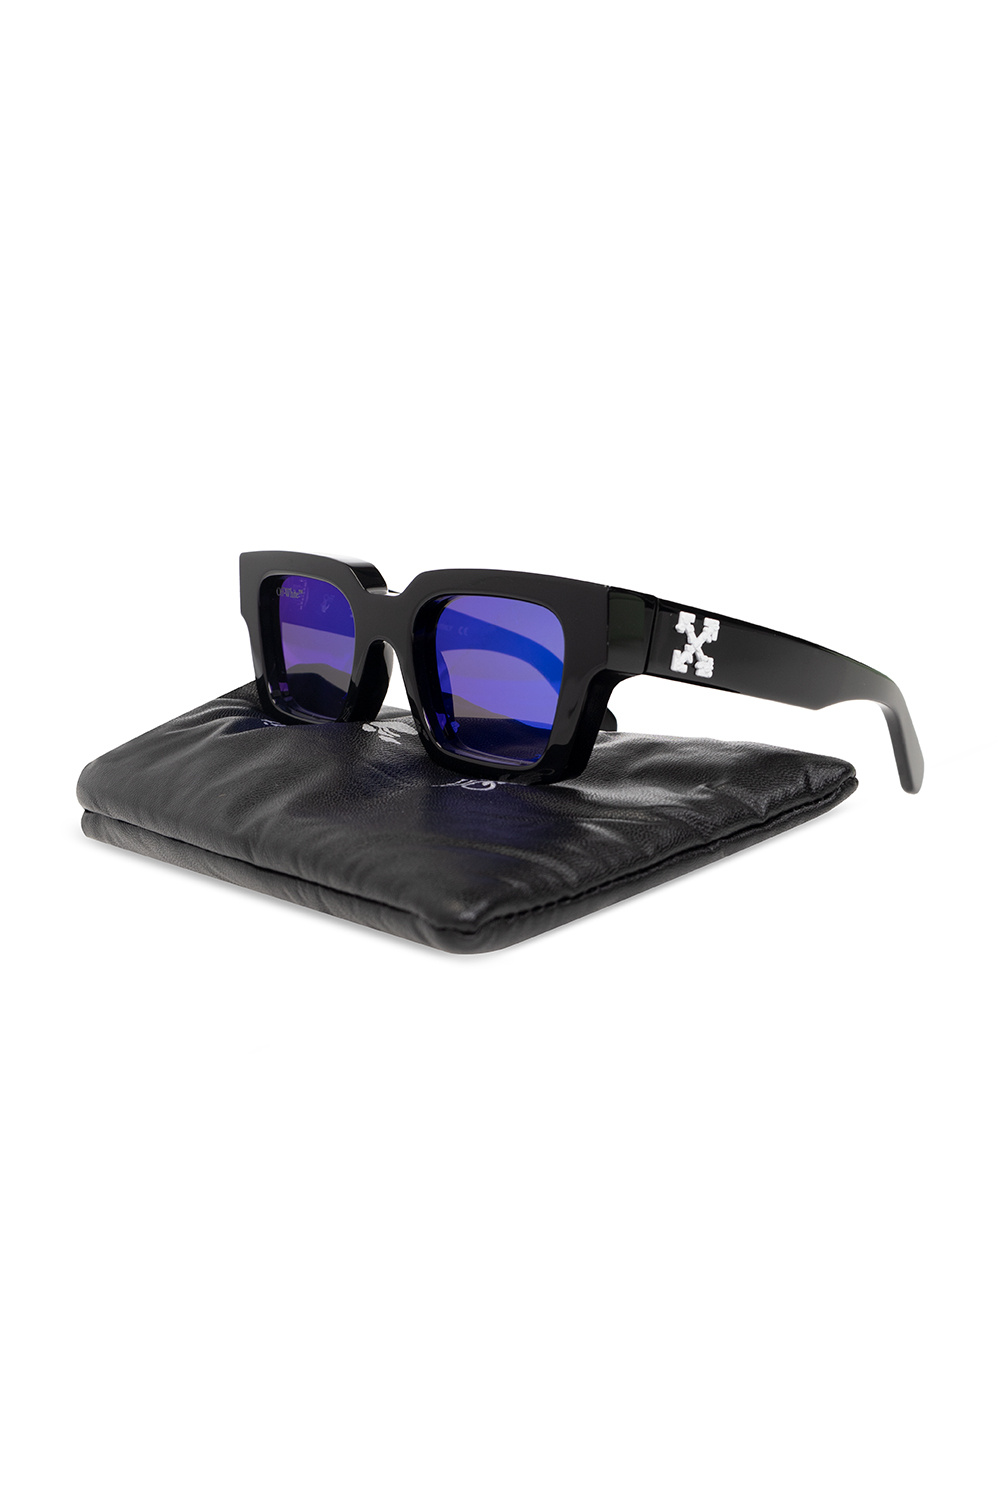 Buy Off-White Virgil Sunglasses 'Black/Blue' - OERI008C99PLA0021045